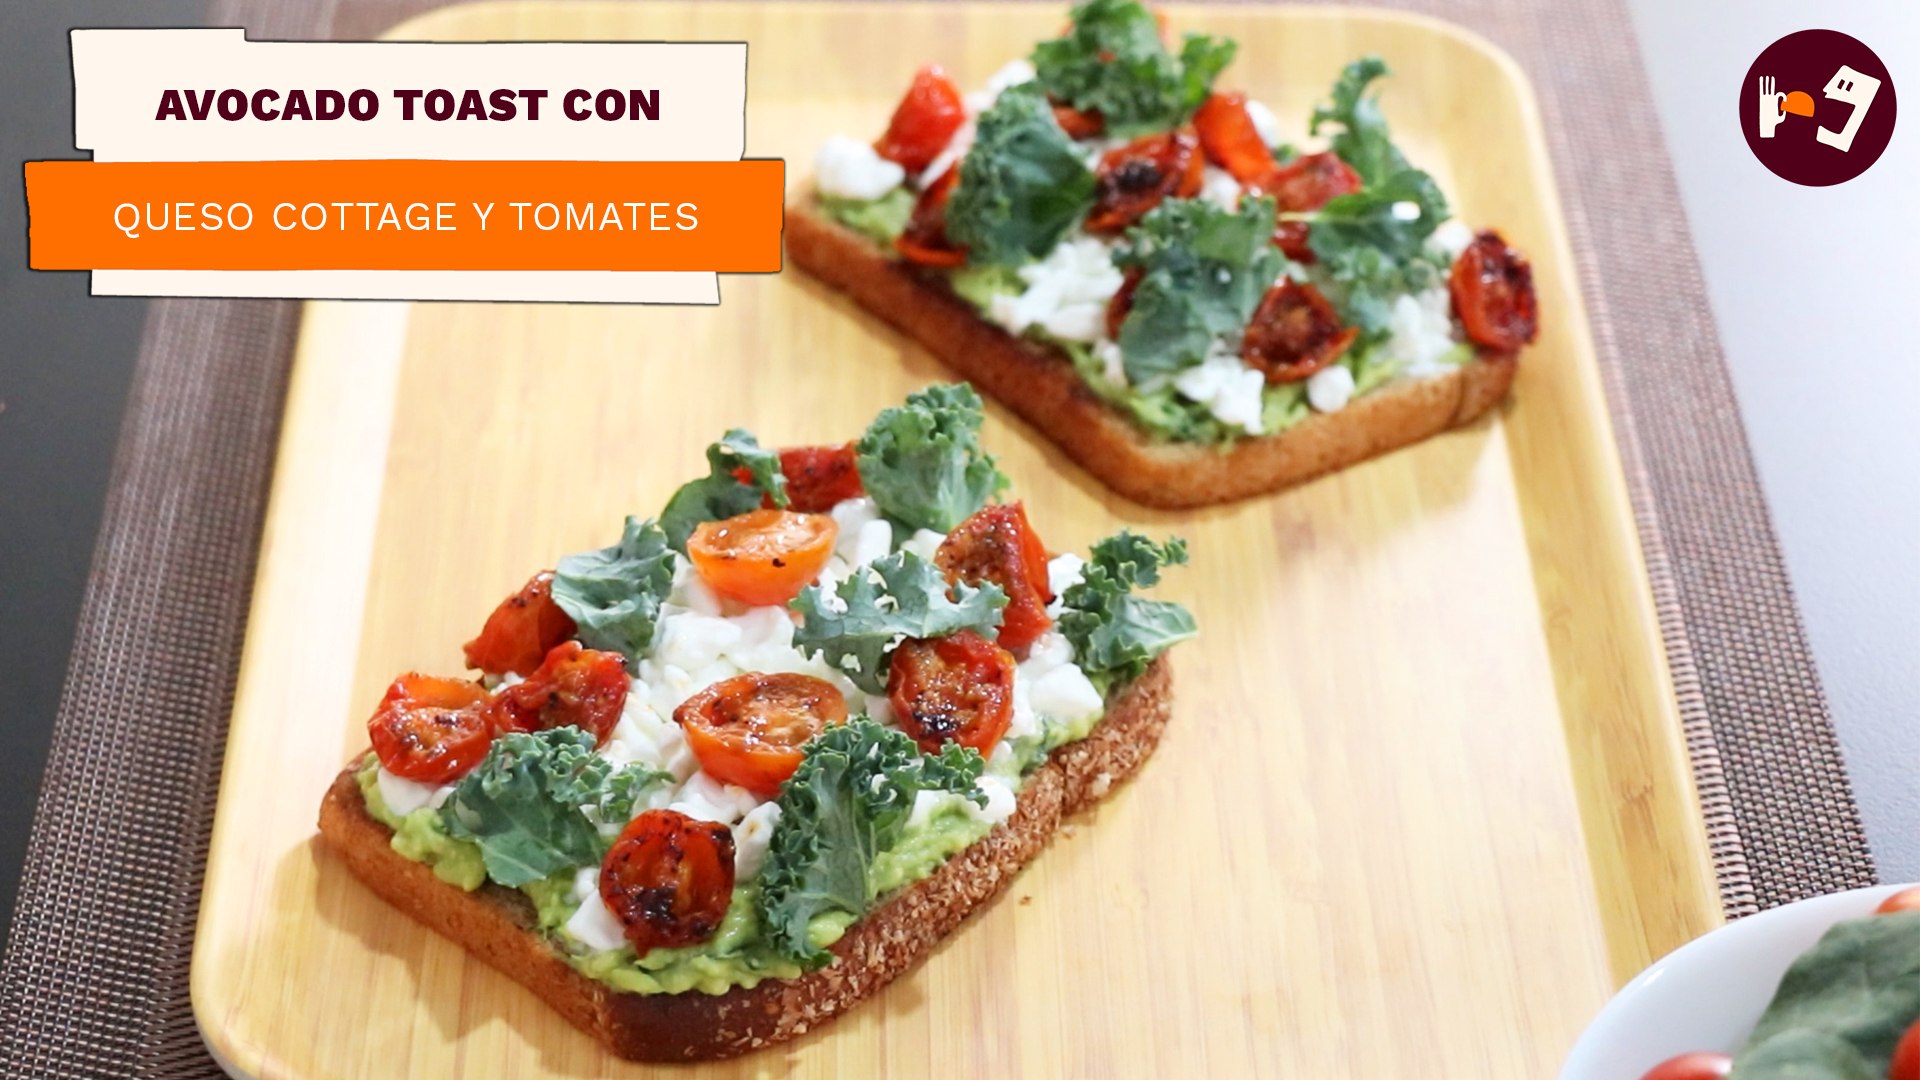 Avocado toast con queso cottage y tomates | Receta fácil para desayuno |  Directo al Paladar México - Vídeo Dailymotion